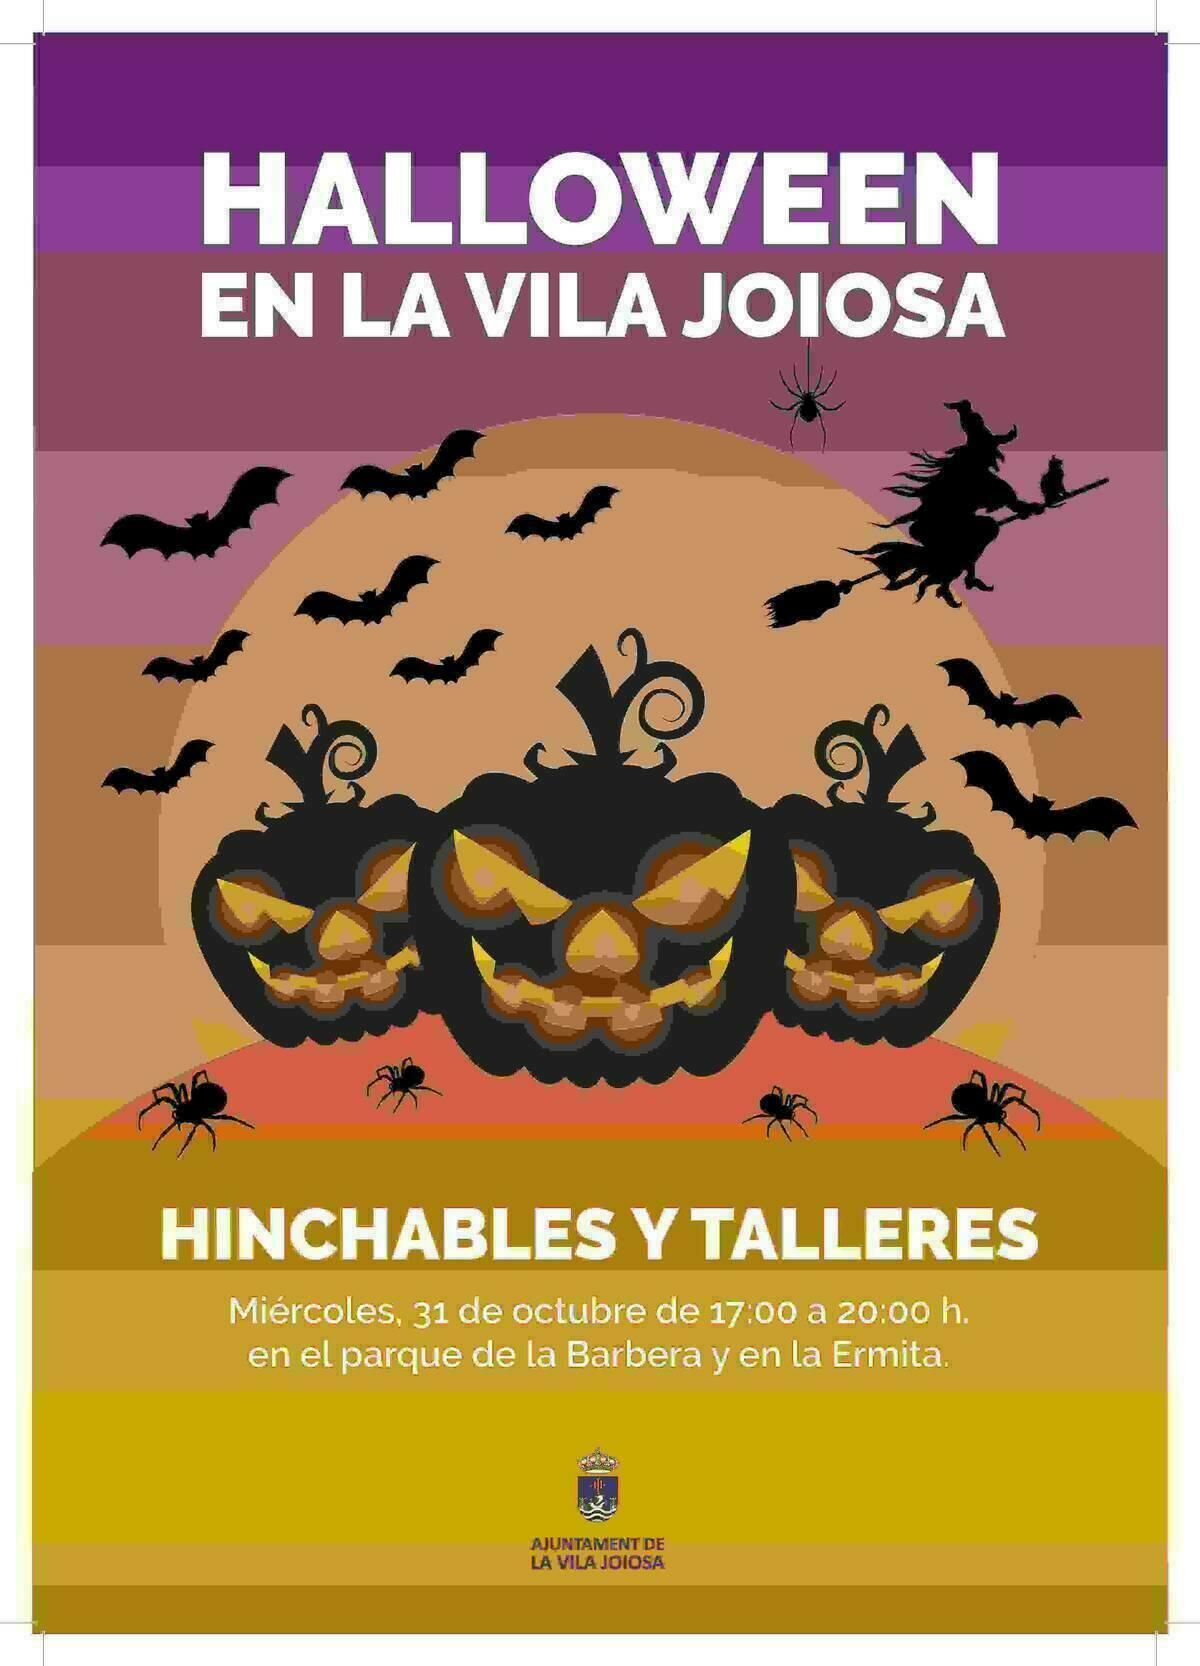 La Vila Joiosa programa actividades para Halloween y Todos los Santos